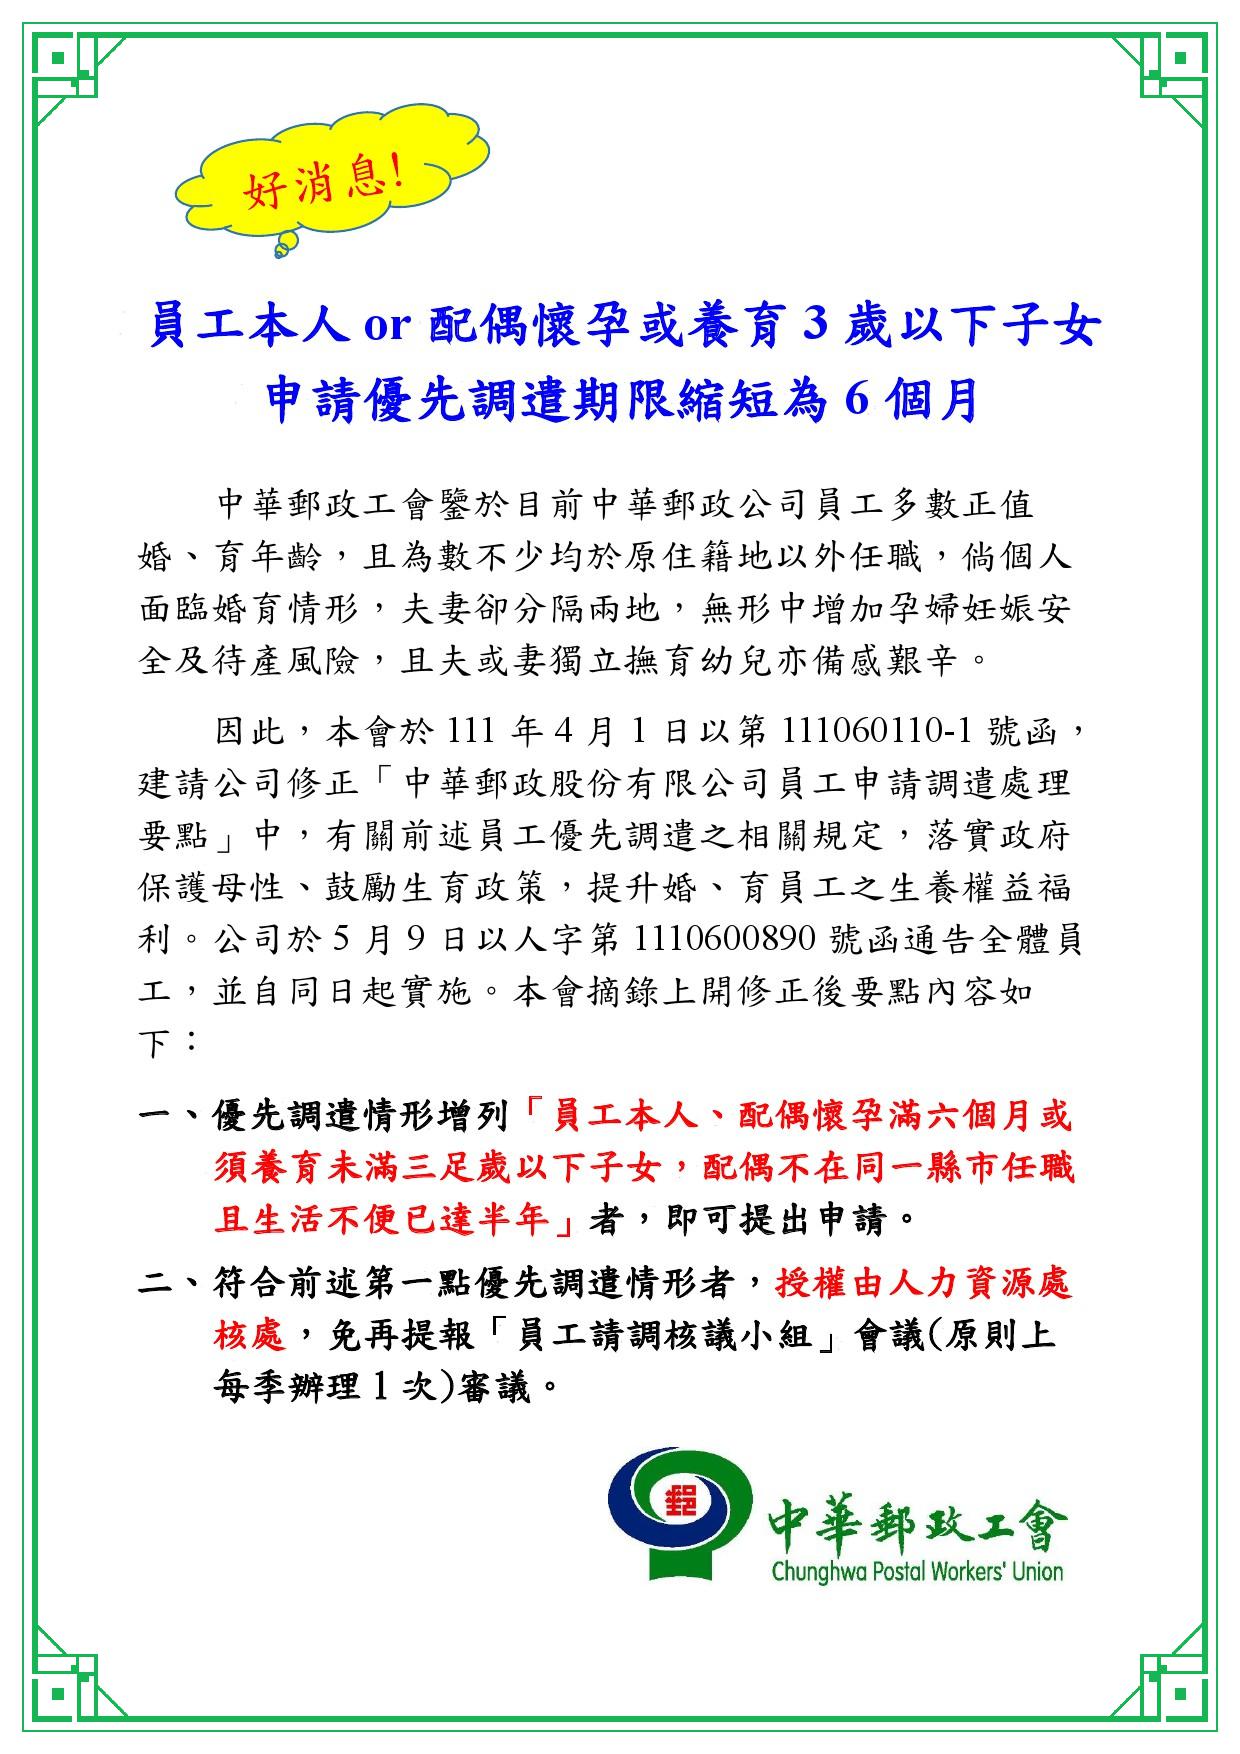 中華郵政工會爭取放寬適婚育情形會員優先調遣規定